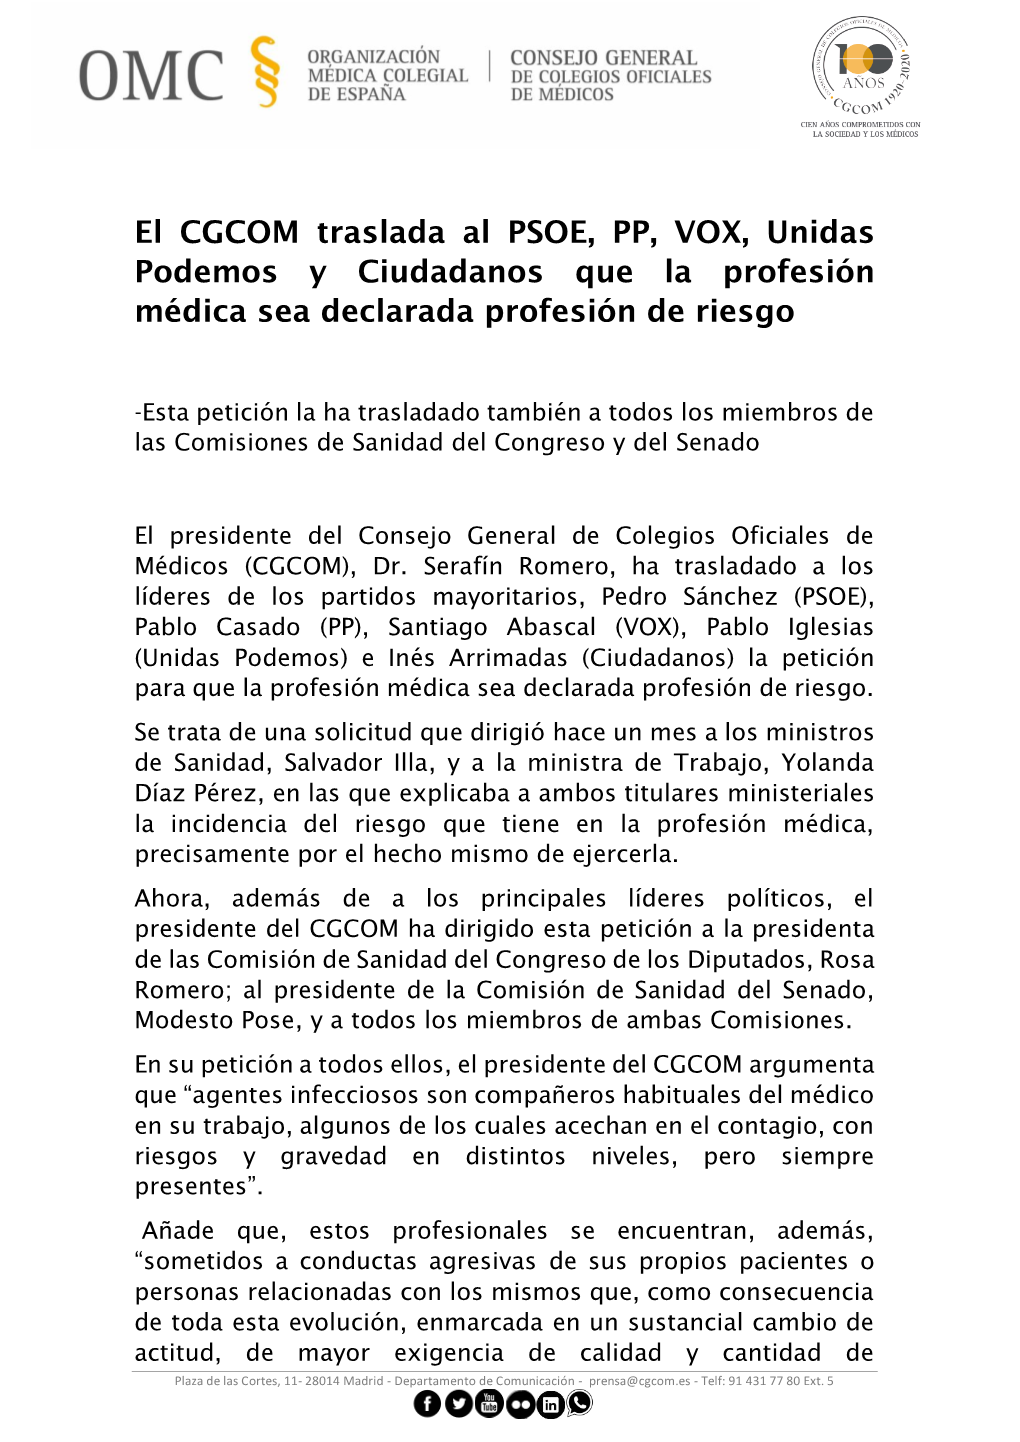 El CGCOM Traslada Al PSOE, PP, VOX, Unidas Podemos Y Ciudadanos Que La Profesión Médica Sea Declarada Profesión De Riesgo